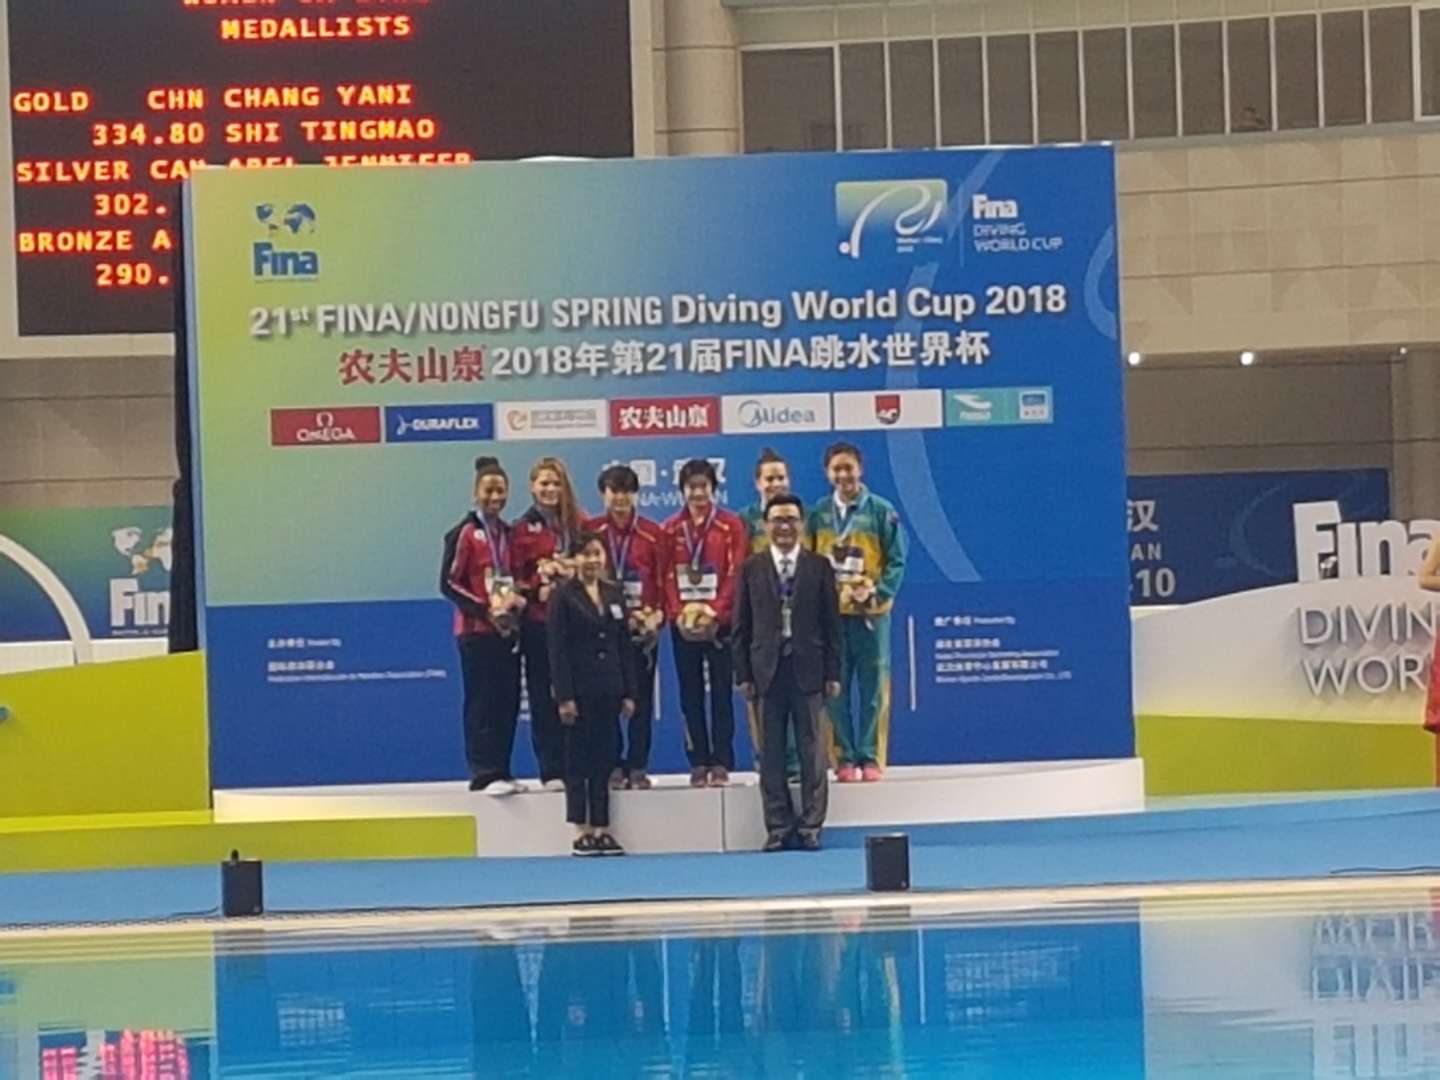 我市运动员施廷懋在第21届FINA跳水世界杯夺双冠